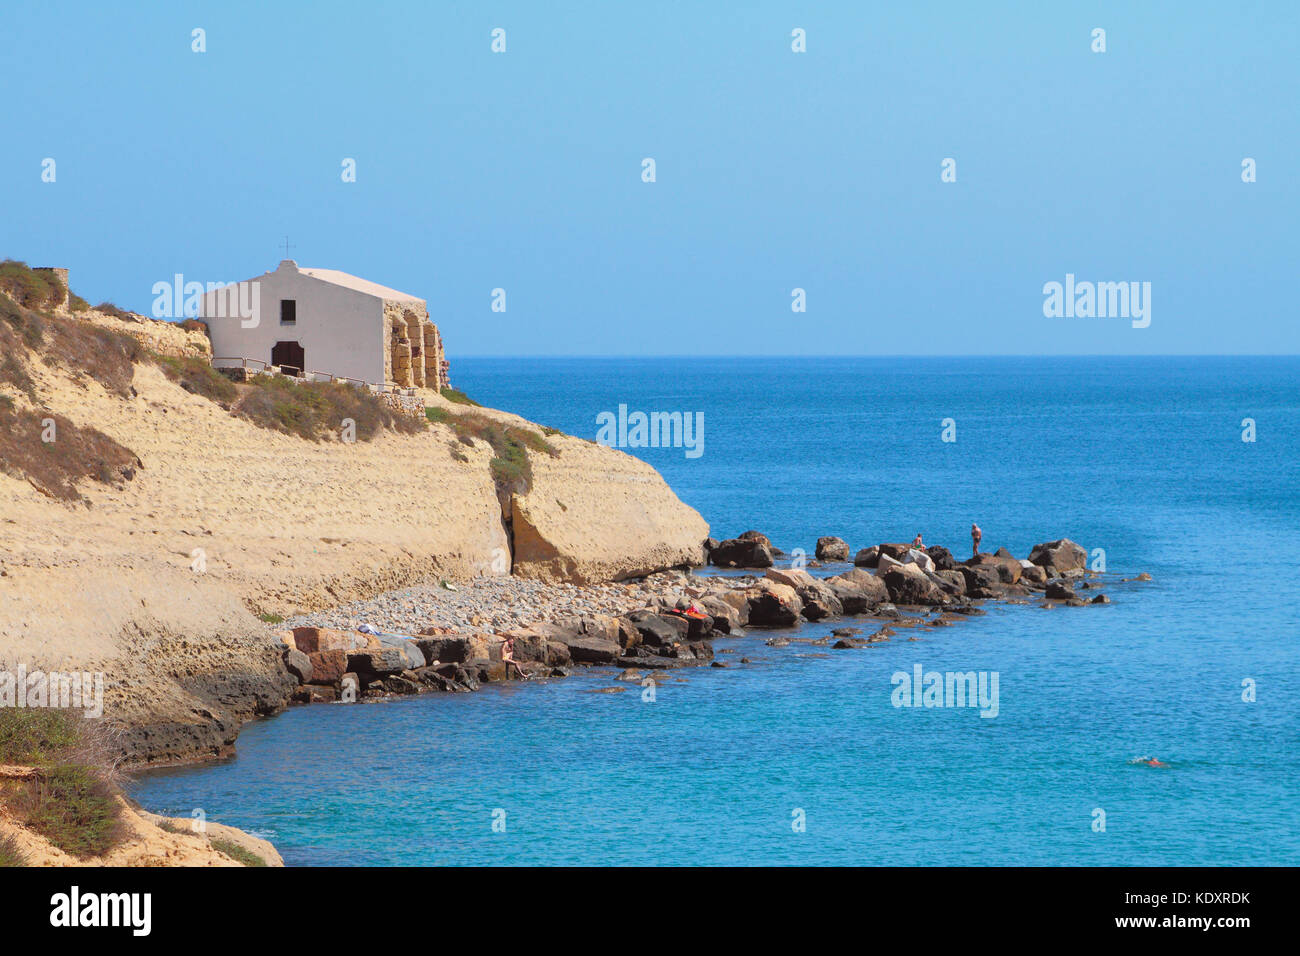 Sea, rocky coast and church. Porto-Torres, Italy Stock Photo